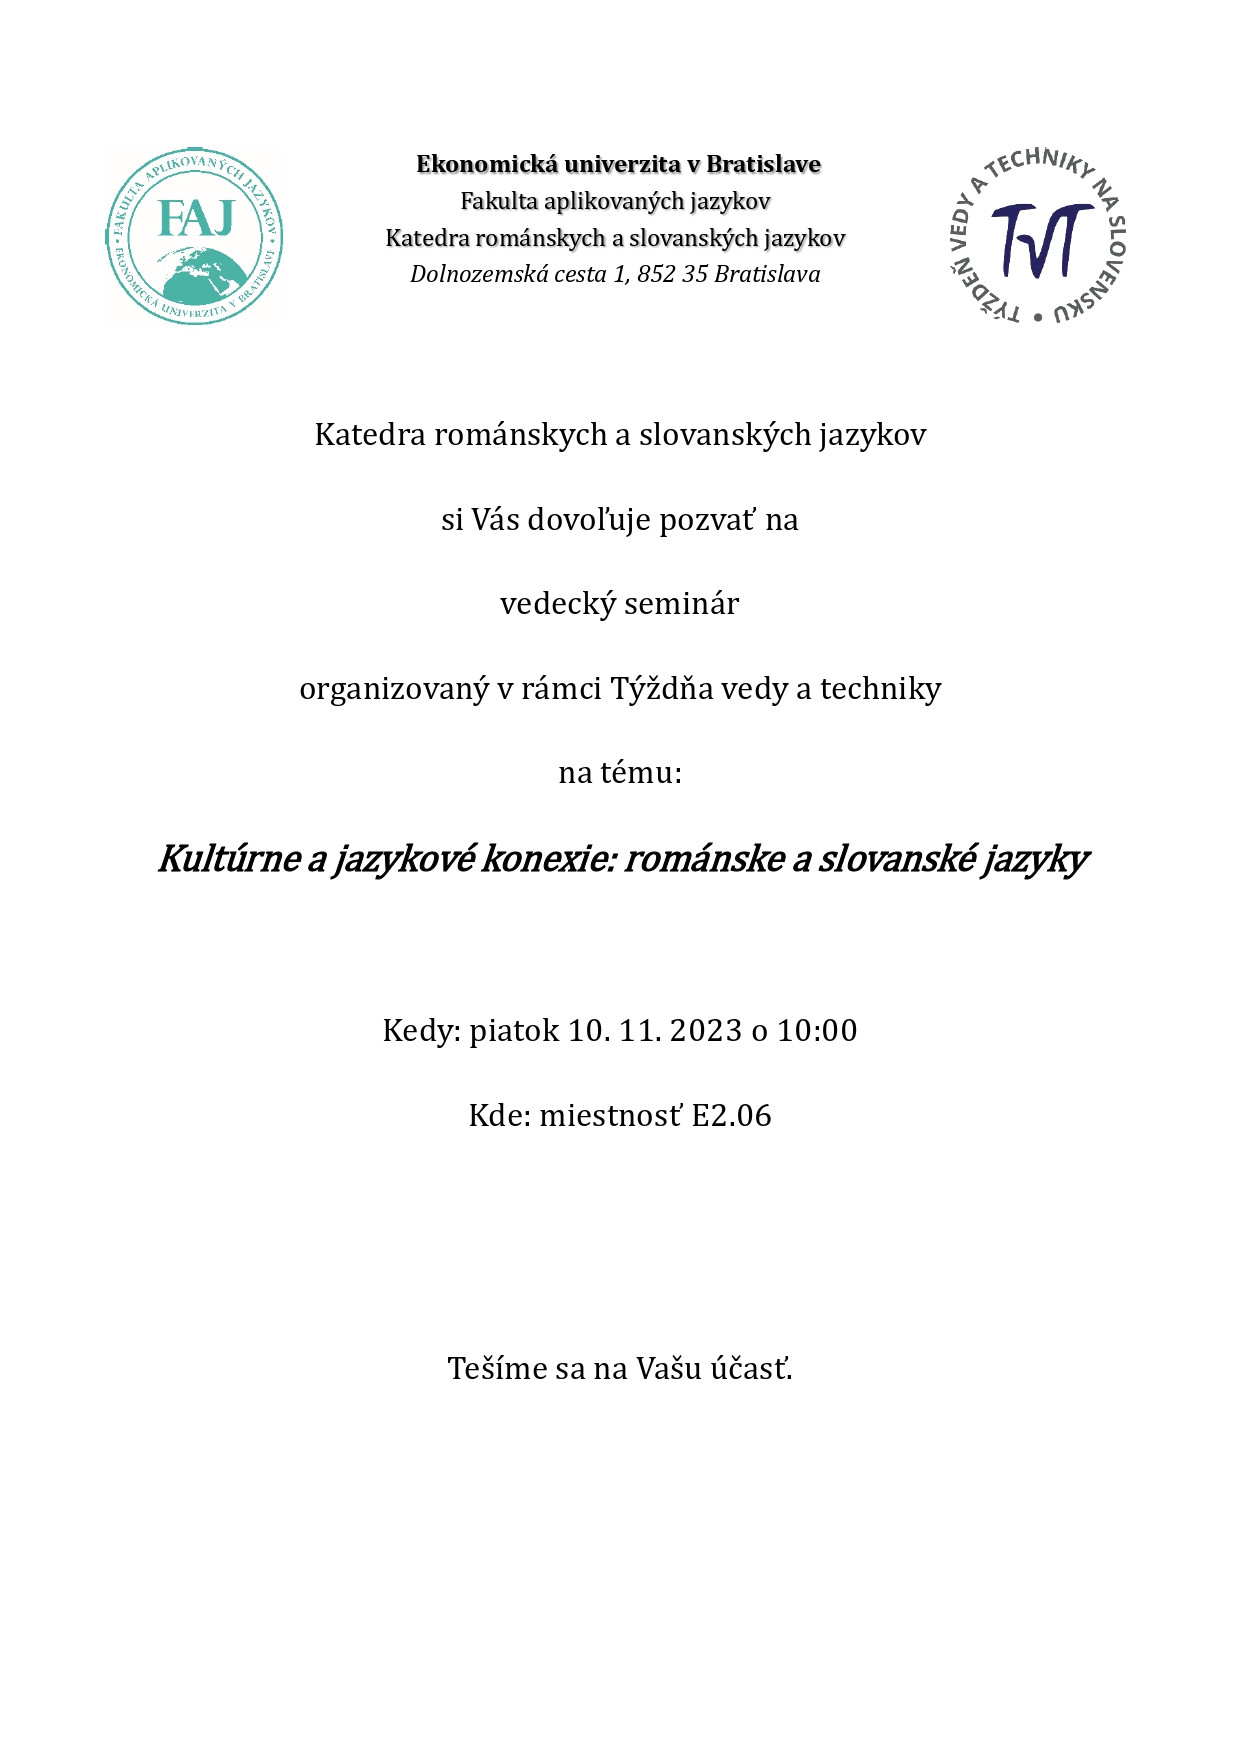 pozvanka_na_vedecky_seminar_krasj_page-0001.jpg